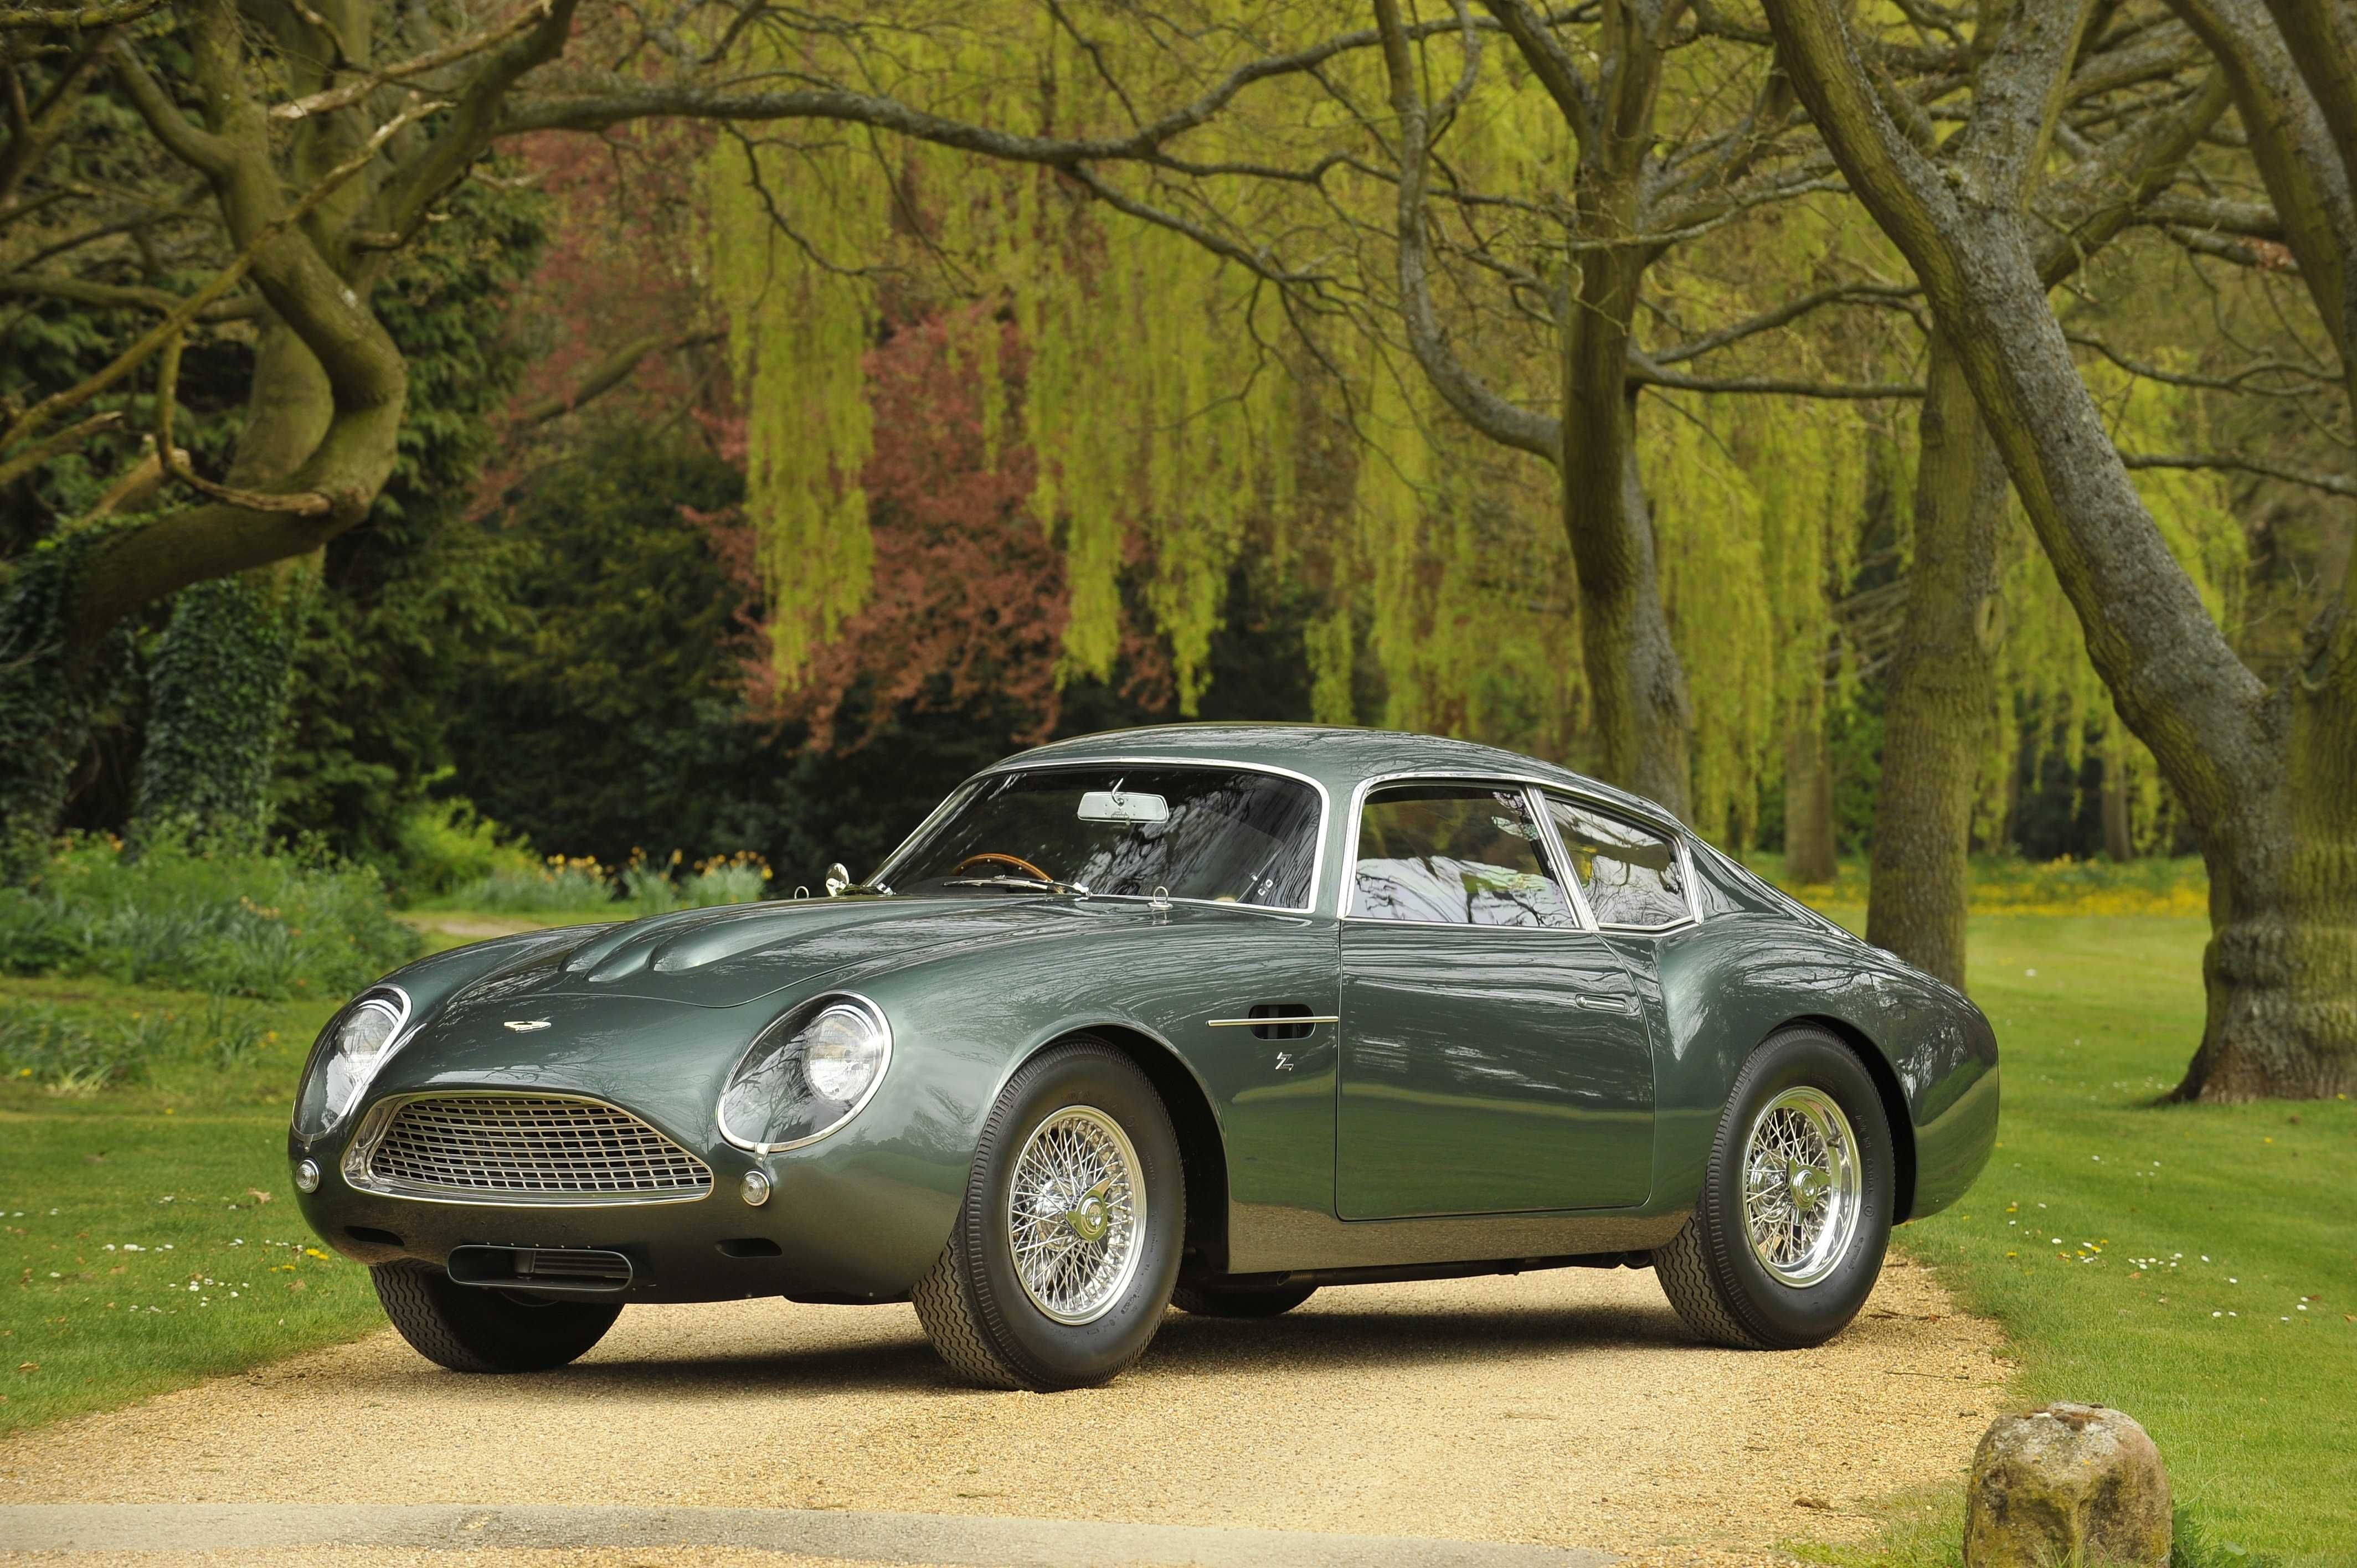 alt="1962 Aston Martin DB4 GT Zagato"